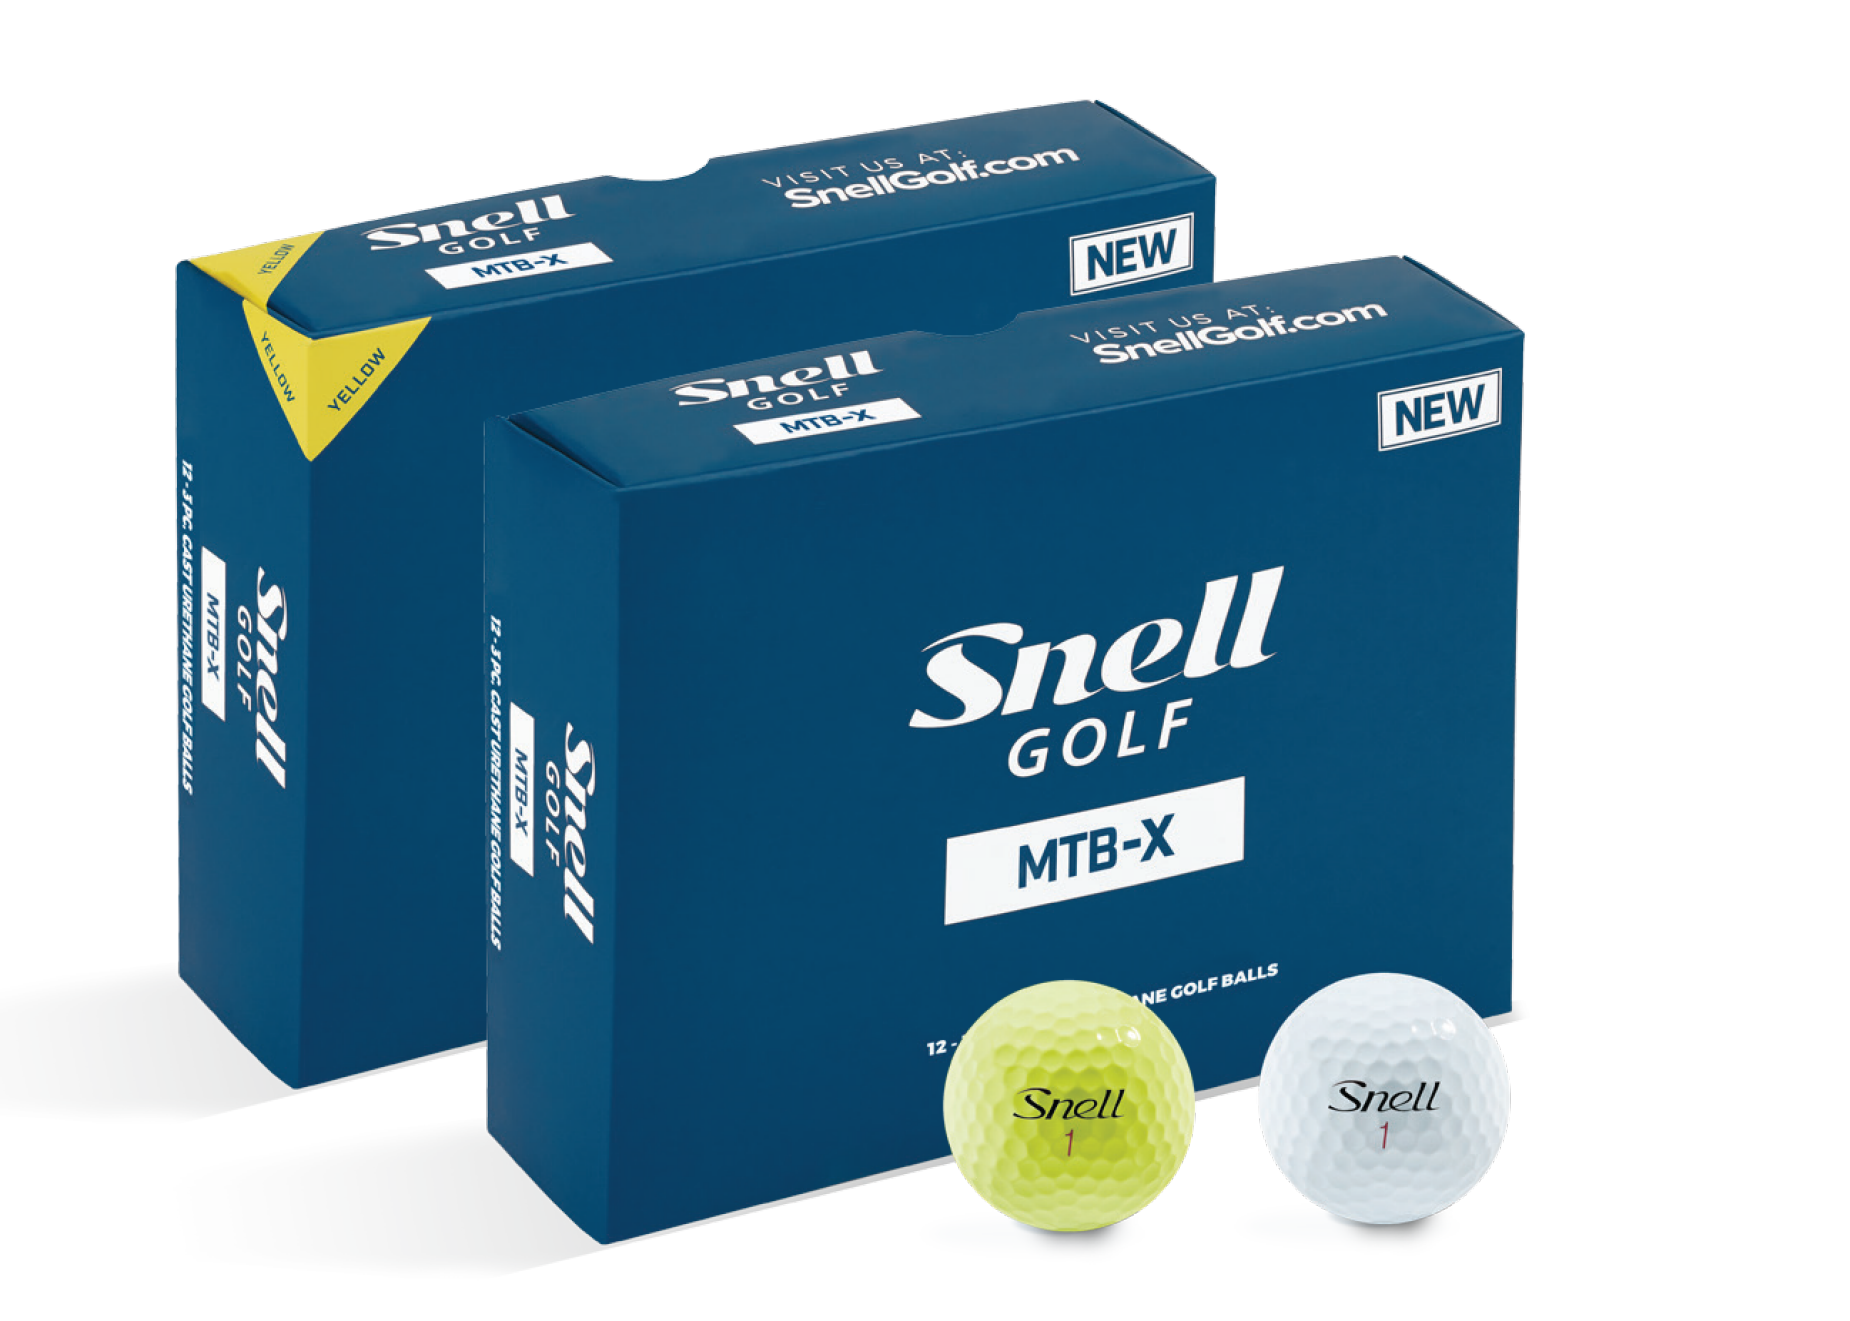 Snell Golf debuts new MTBX golf balls Golf Digest